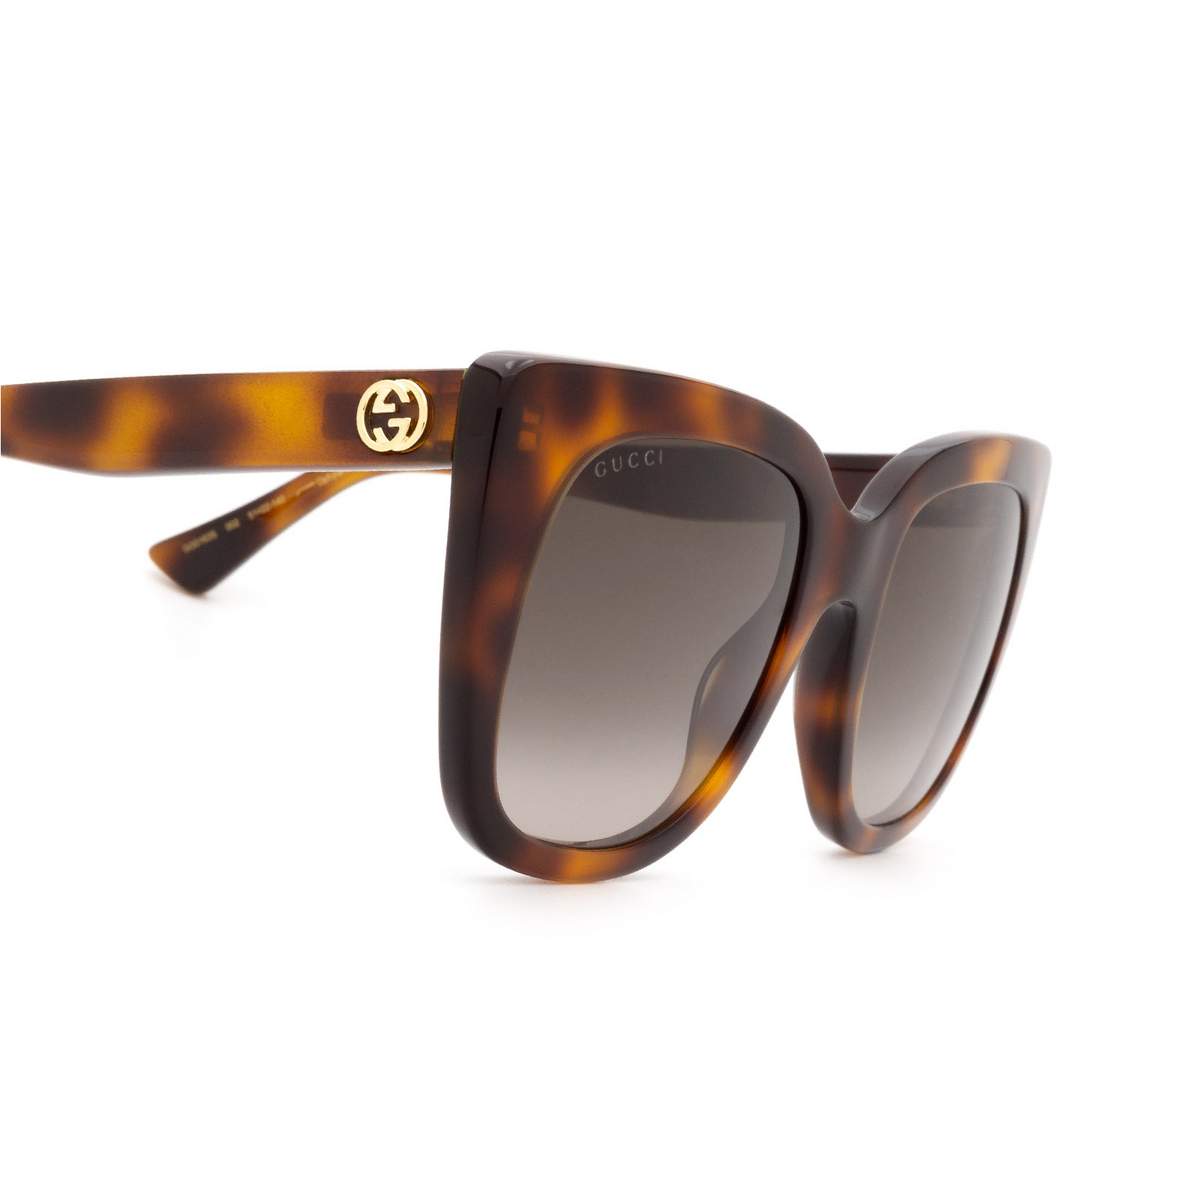 Gucci Gg0163s Sunglasses Mia Burton